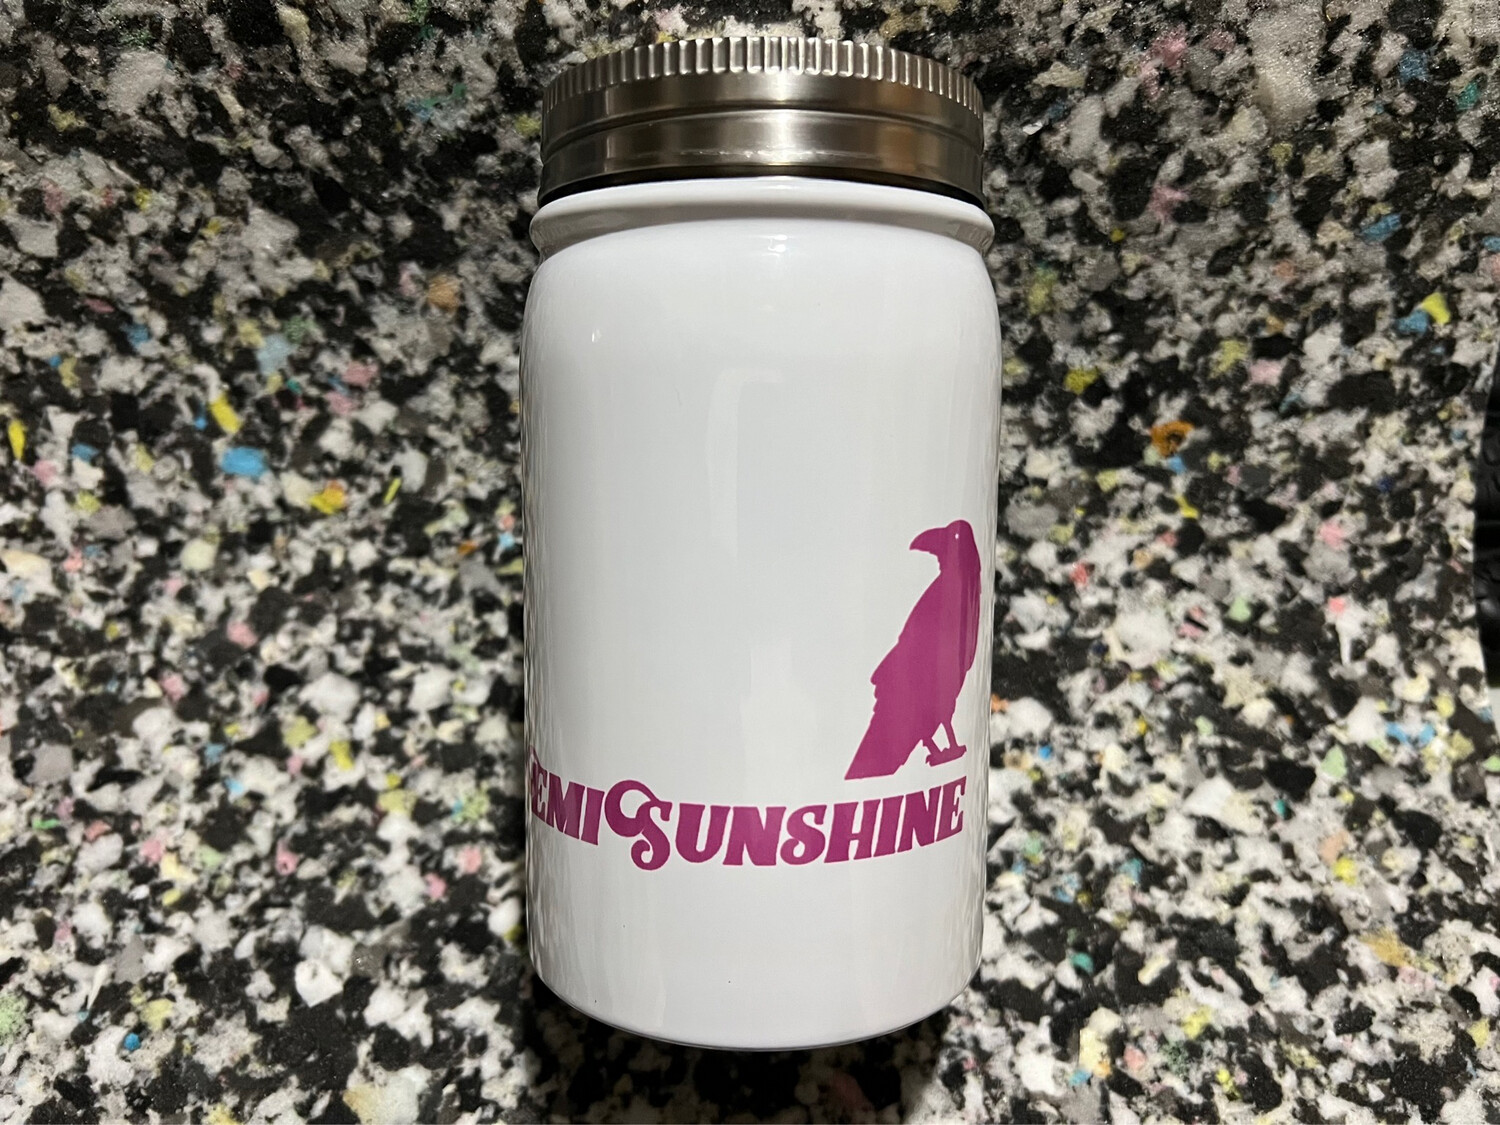 Limited Edition EmiSunshine mug